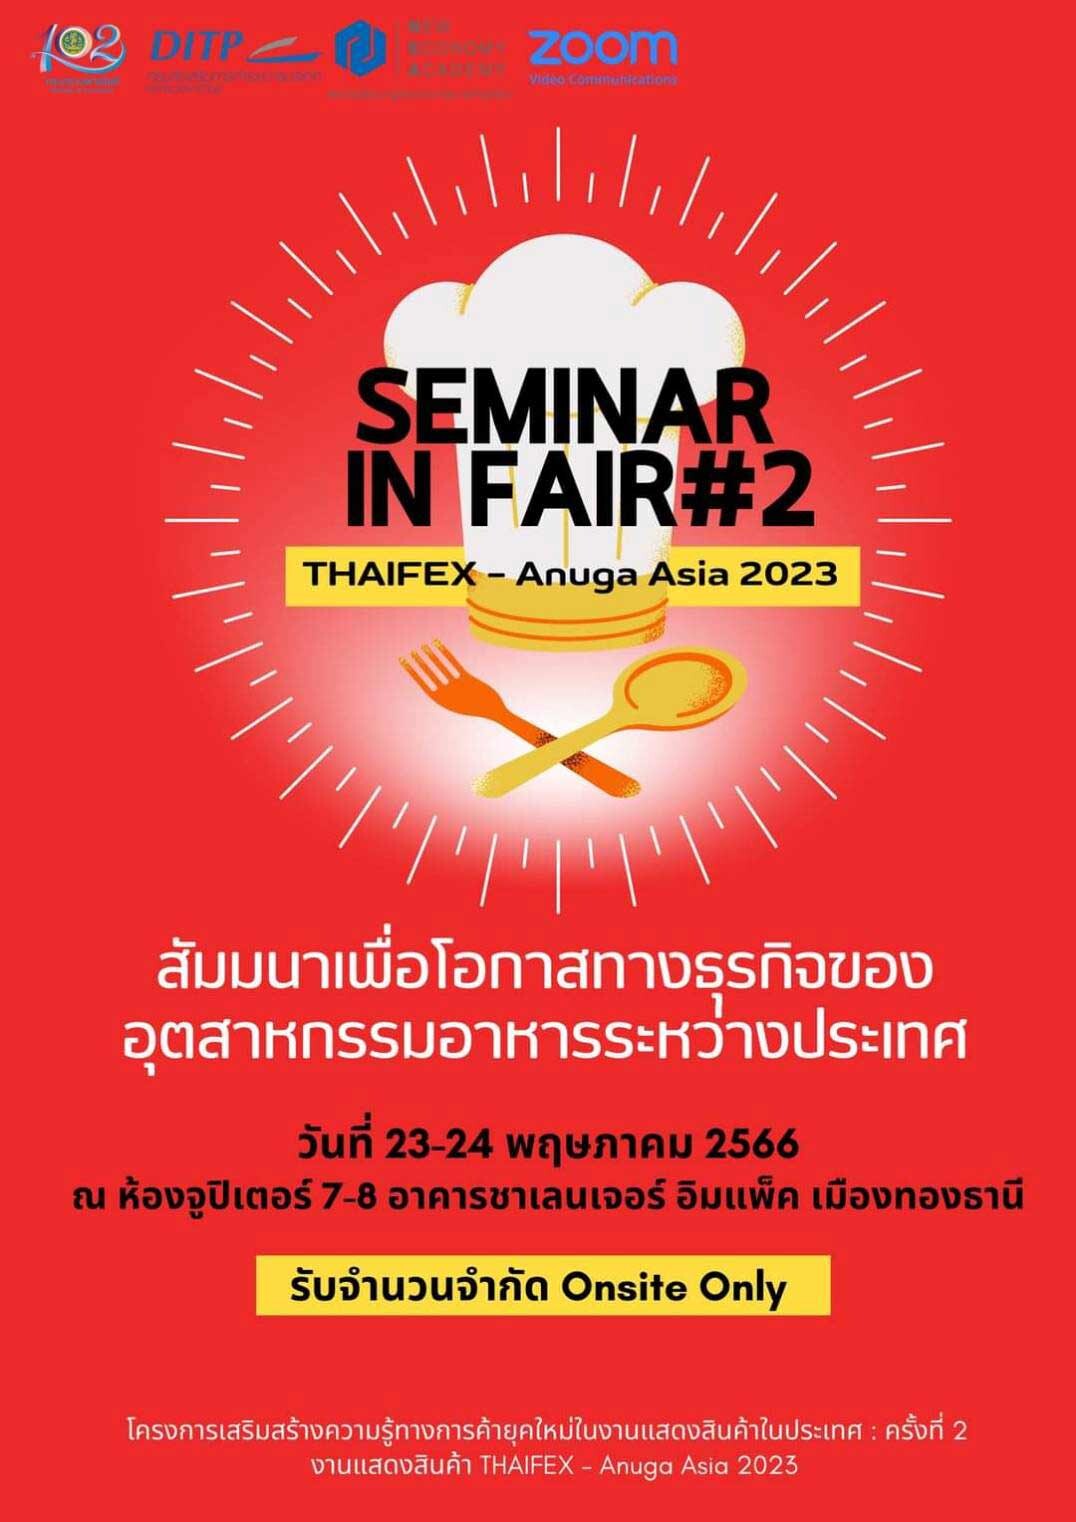 "กระทรวงพาณิชย์" ร่วมกับ NEA จัดกิจกรรมพัฒนาความรู้ผู้ประกอบการยุคใหม่ ในงาน THAIFEX - Anuga Asia 2023